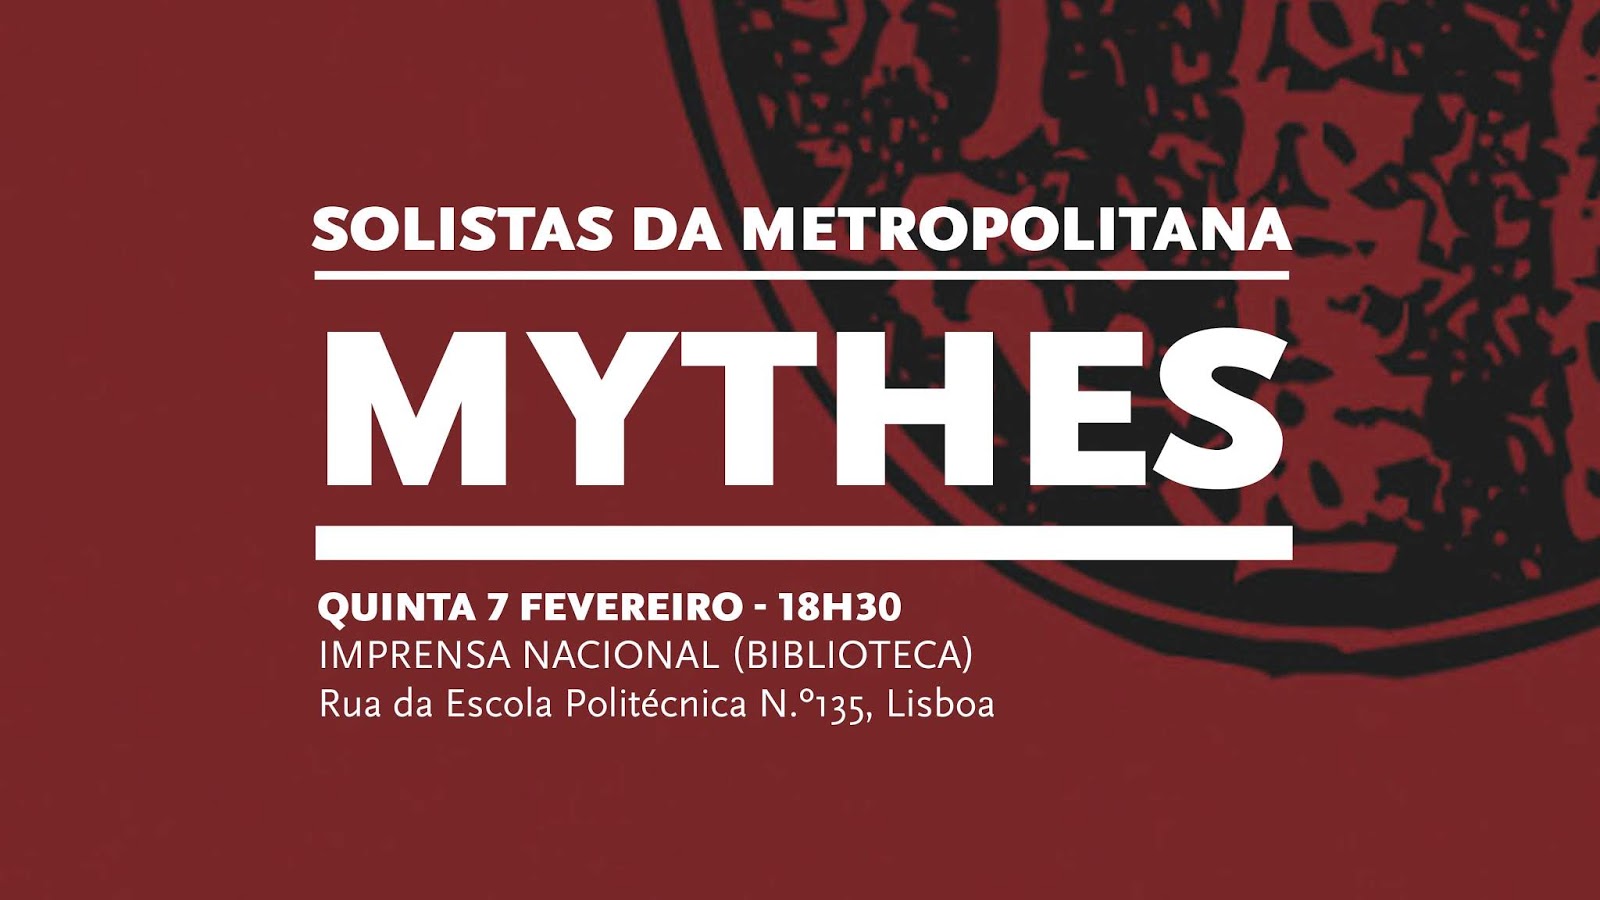 «Mythes» é a proposta dos solistas da Metropolitana para dia 07/02 na Biblioteca da Imprensa Nacional